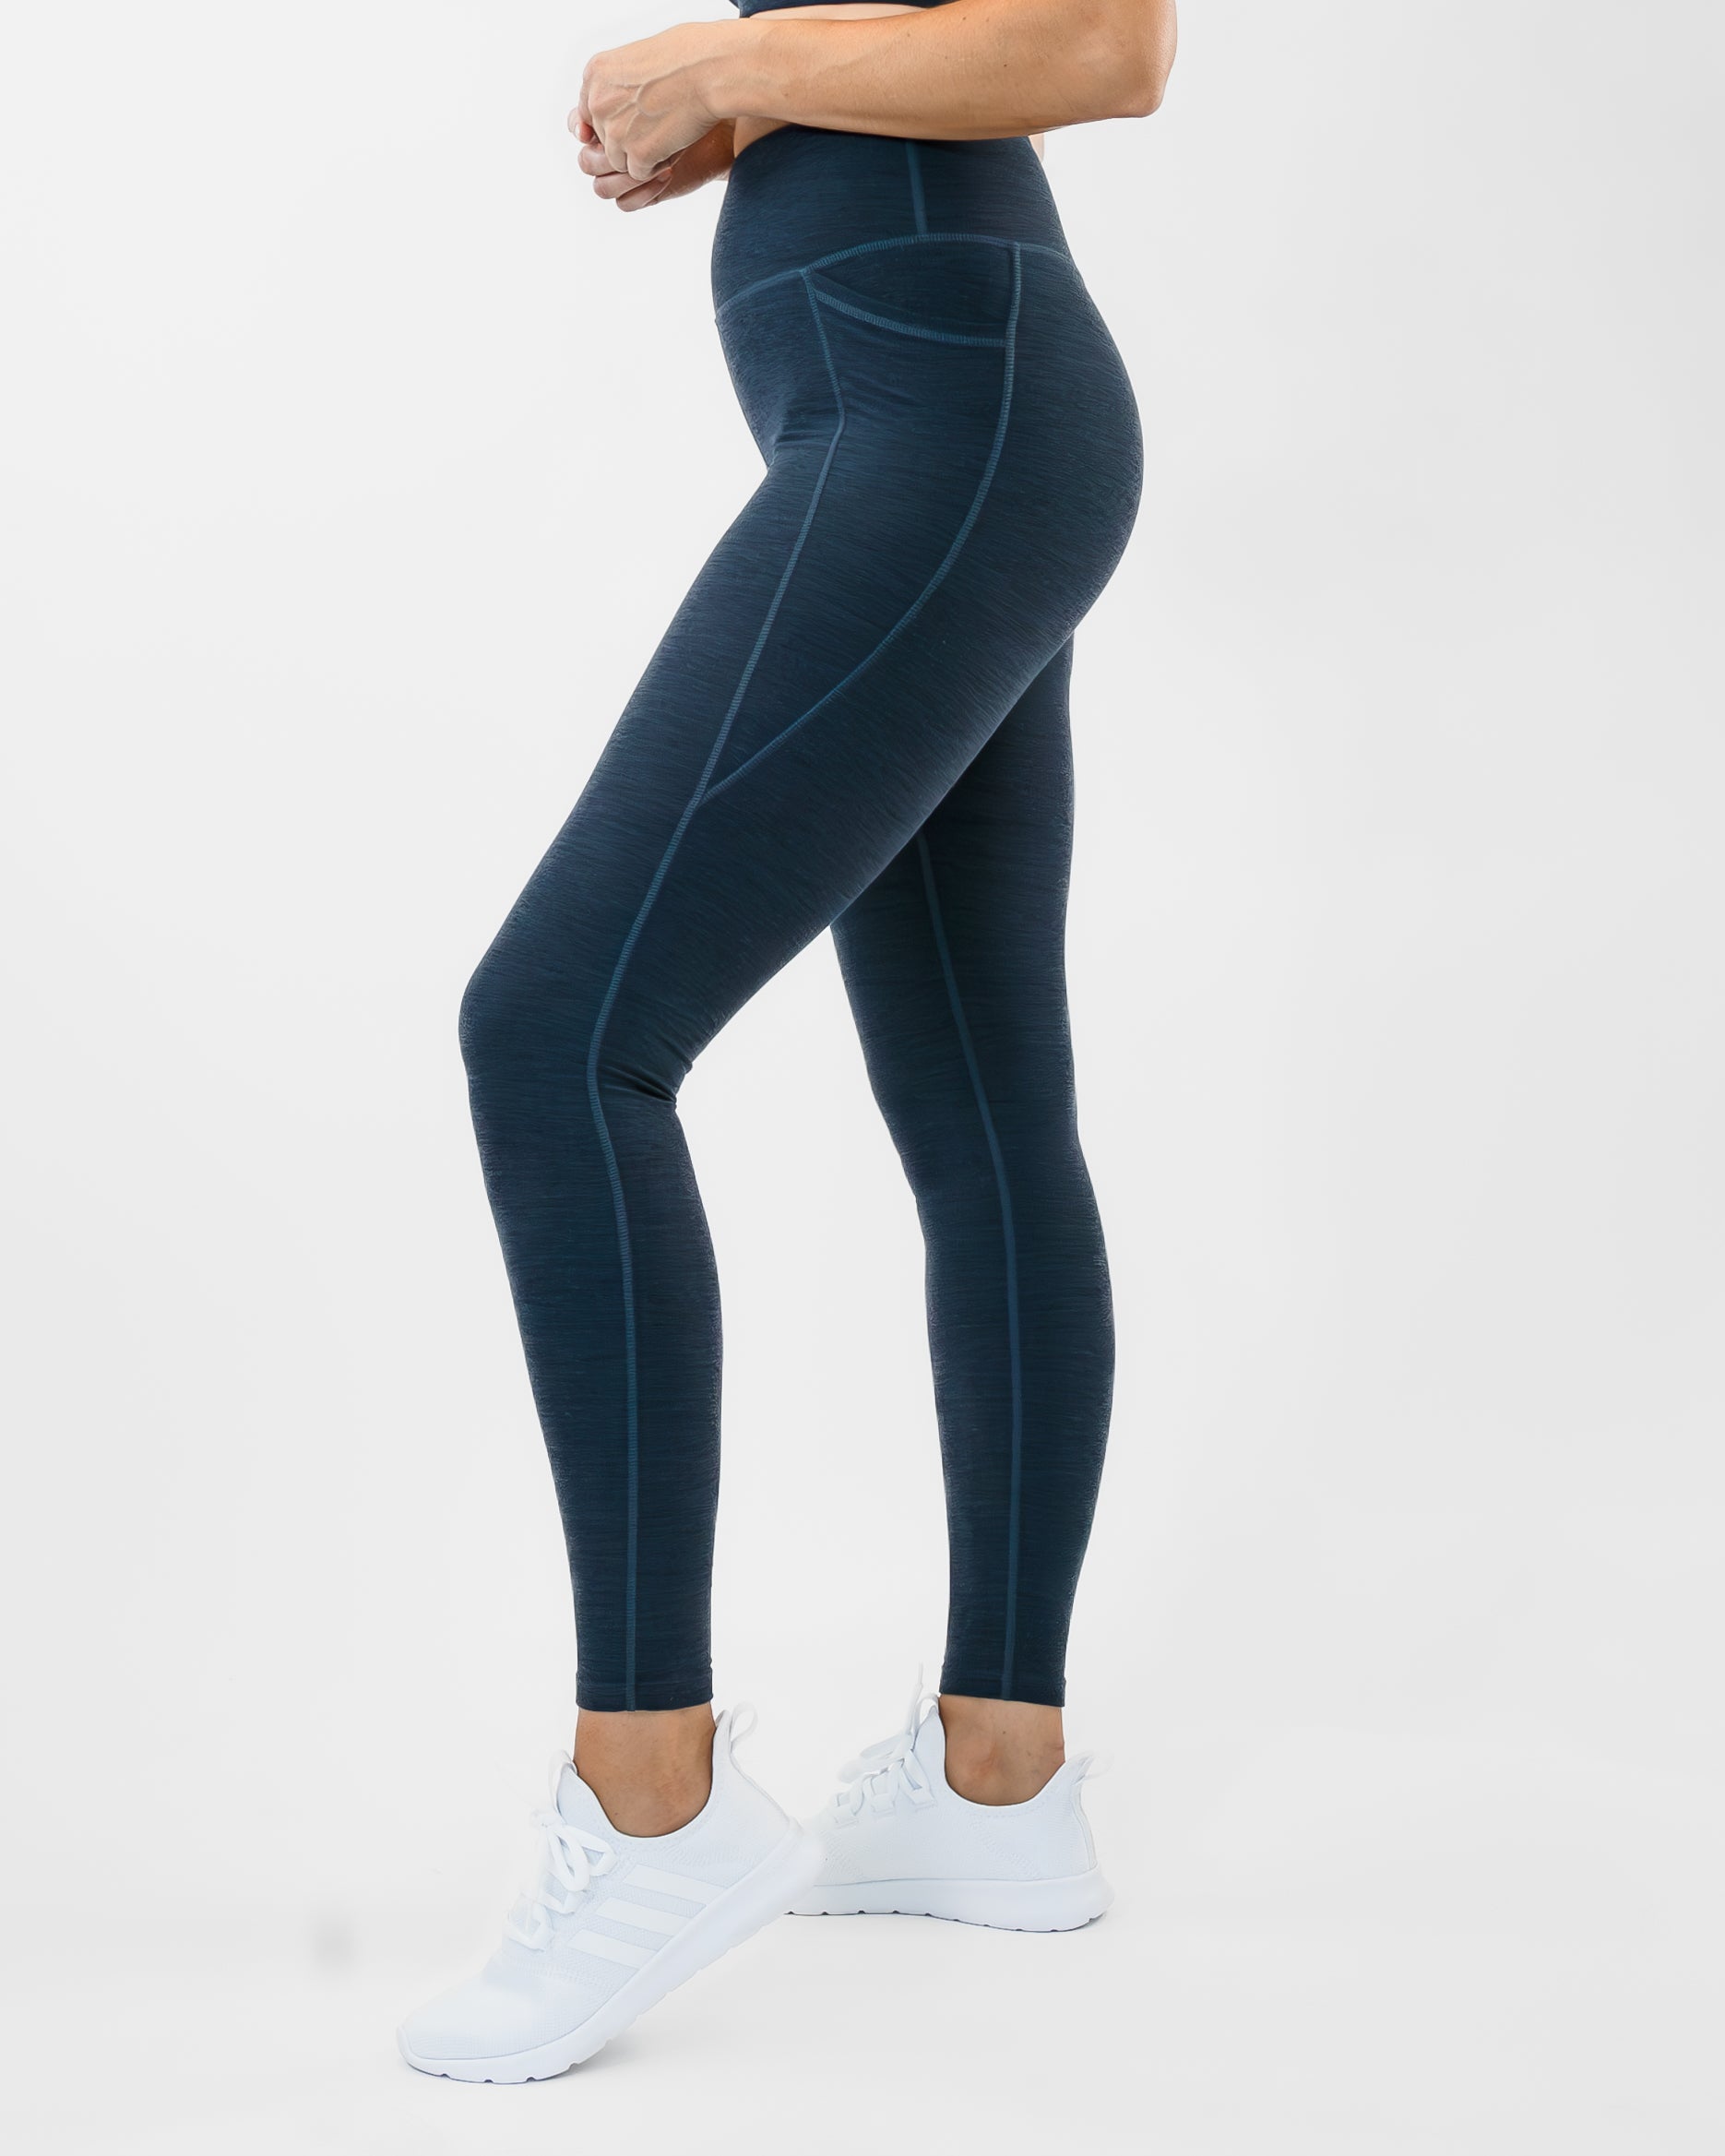 Alphalete, Pants & Jumpsuits, Alphalete Womens Revival Leggings Size  Medium Activewear Workout Compression